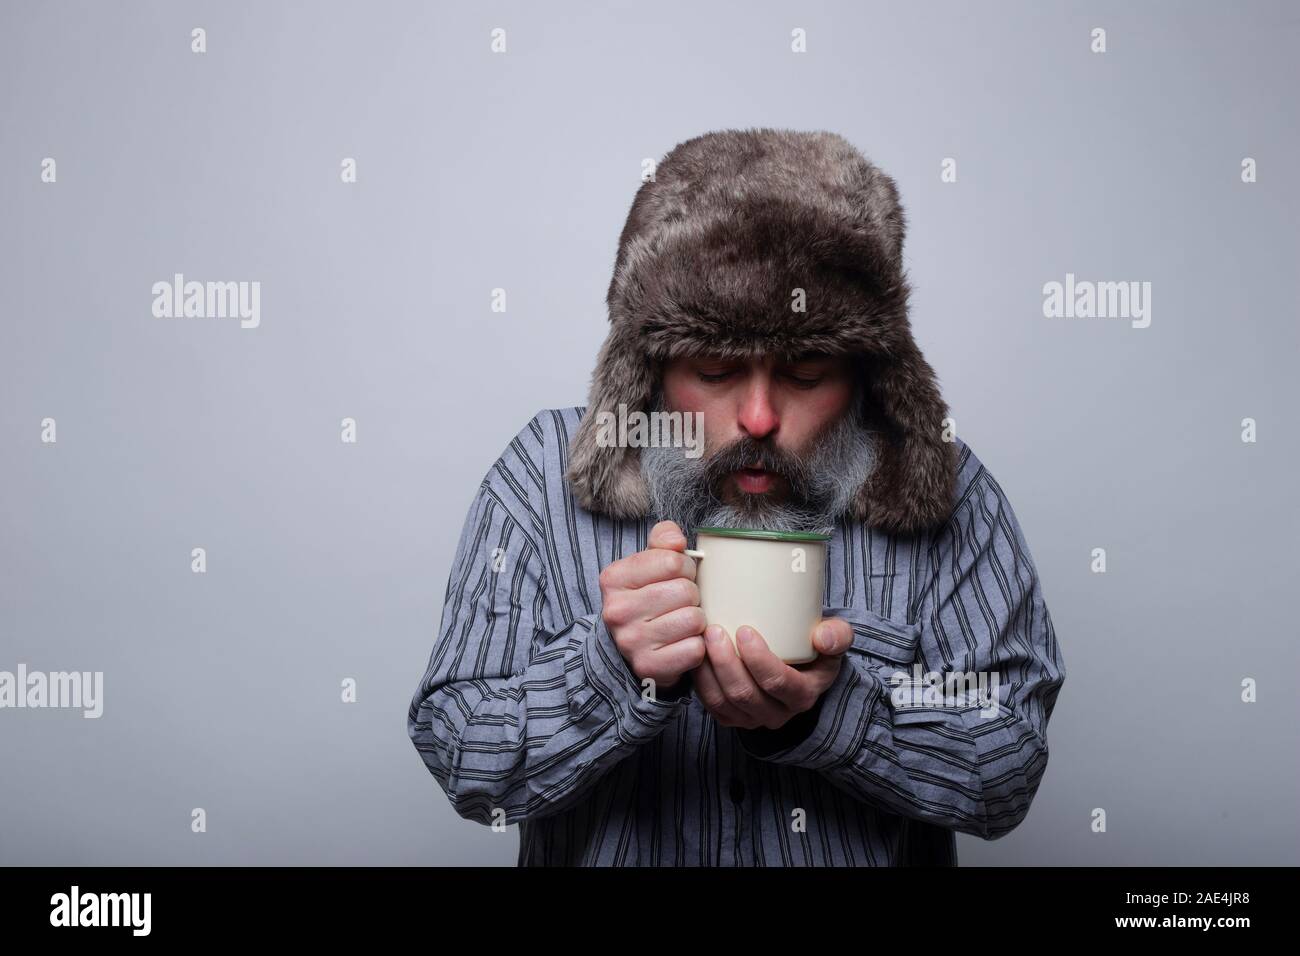 Grippe kranken Mann mit Schlafanzug und mit einer Kappe weht eine heiße  Tasse Tee auf einem grauen Hintergrund. Gesundheit Konzept Stockfotografie  - Alamy